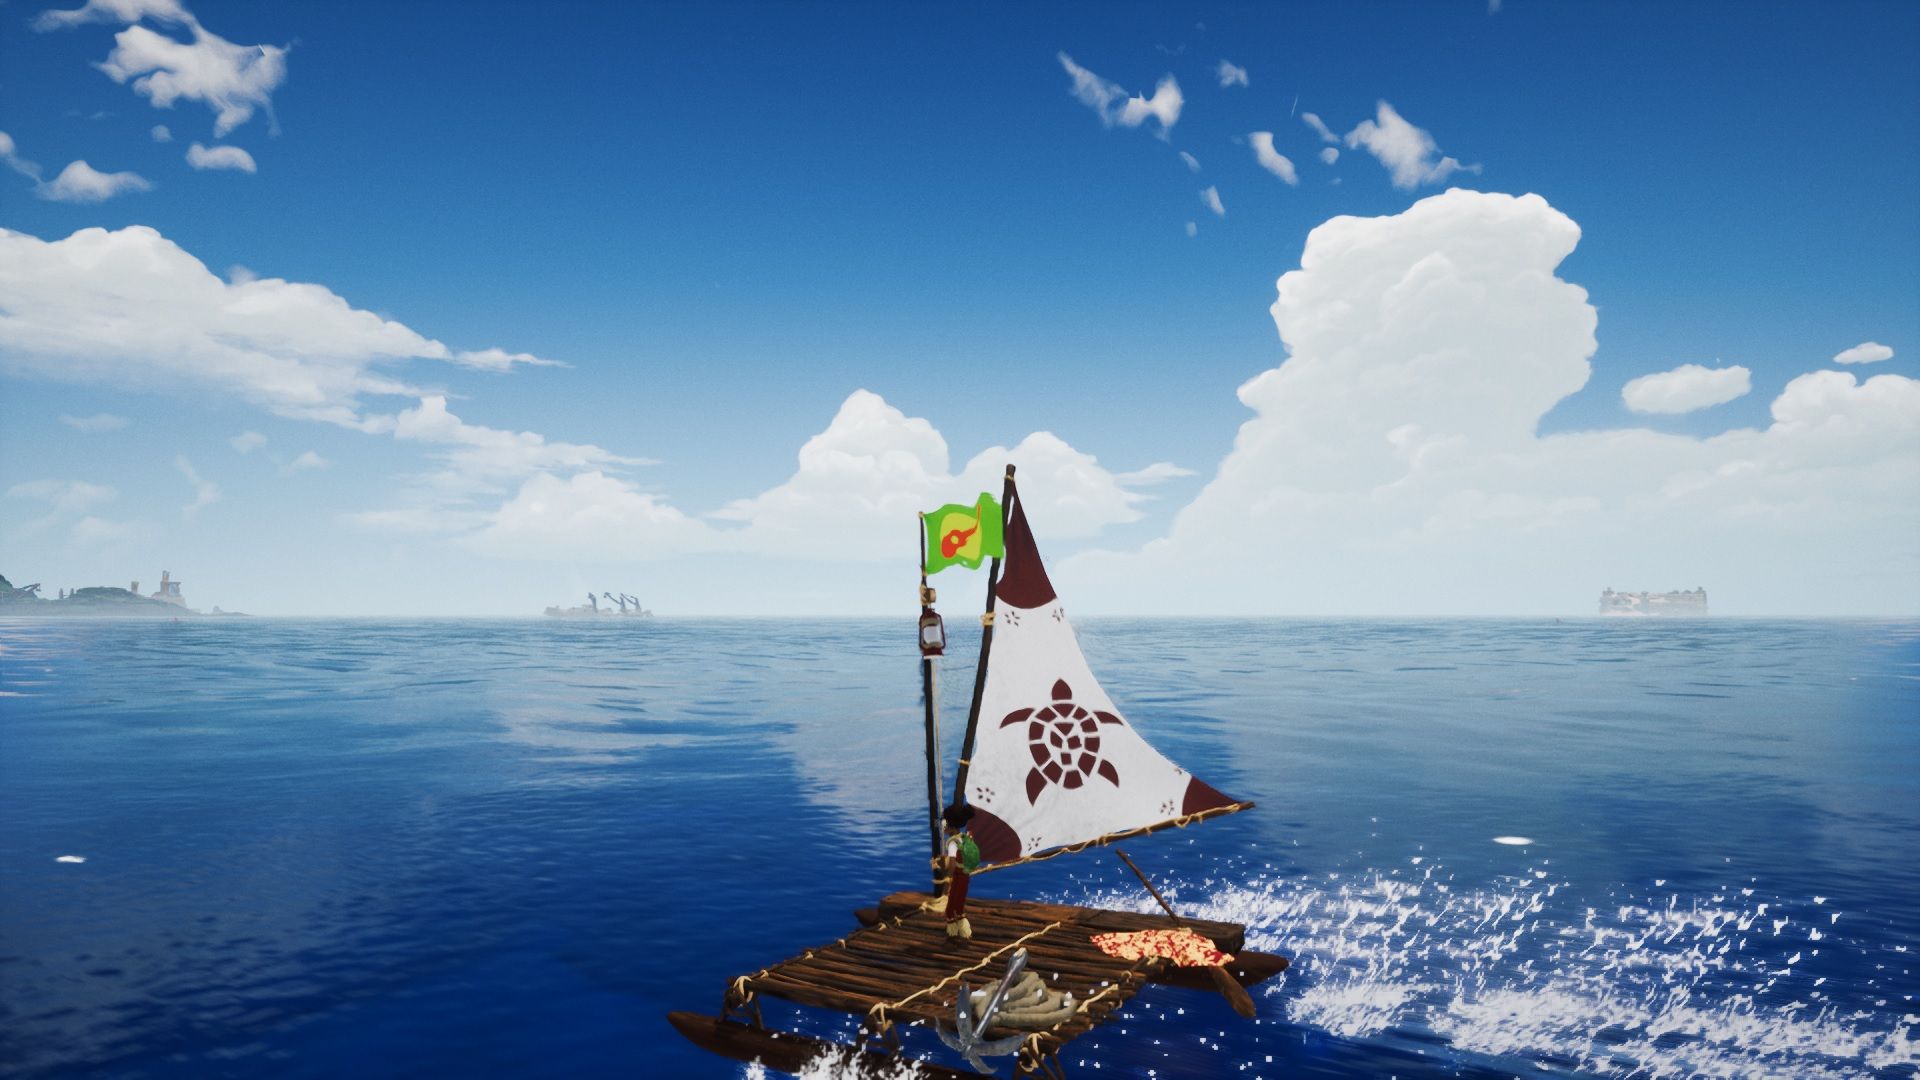 Image du bateau dans le jeu Tchia.